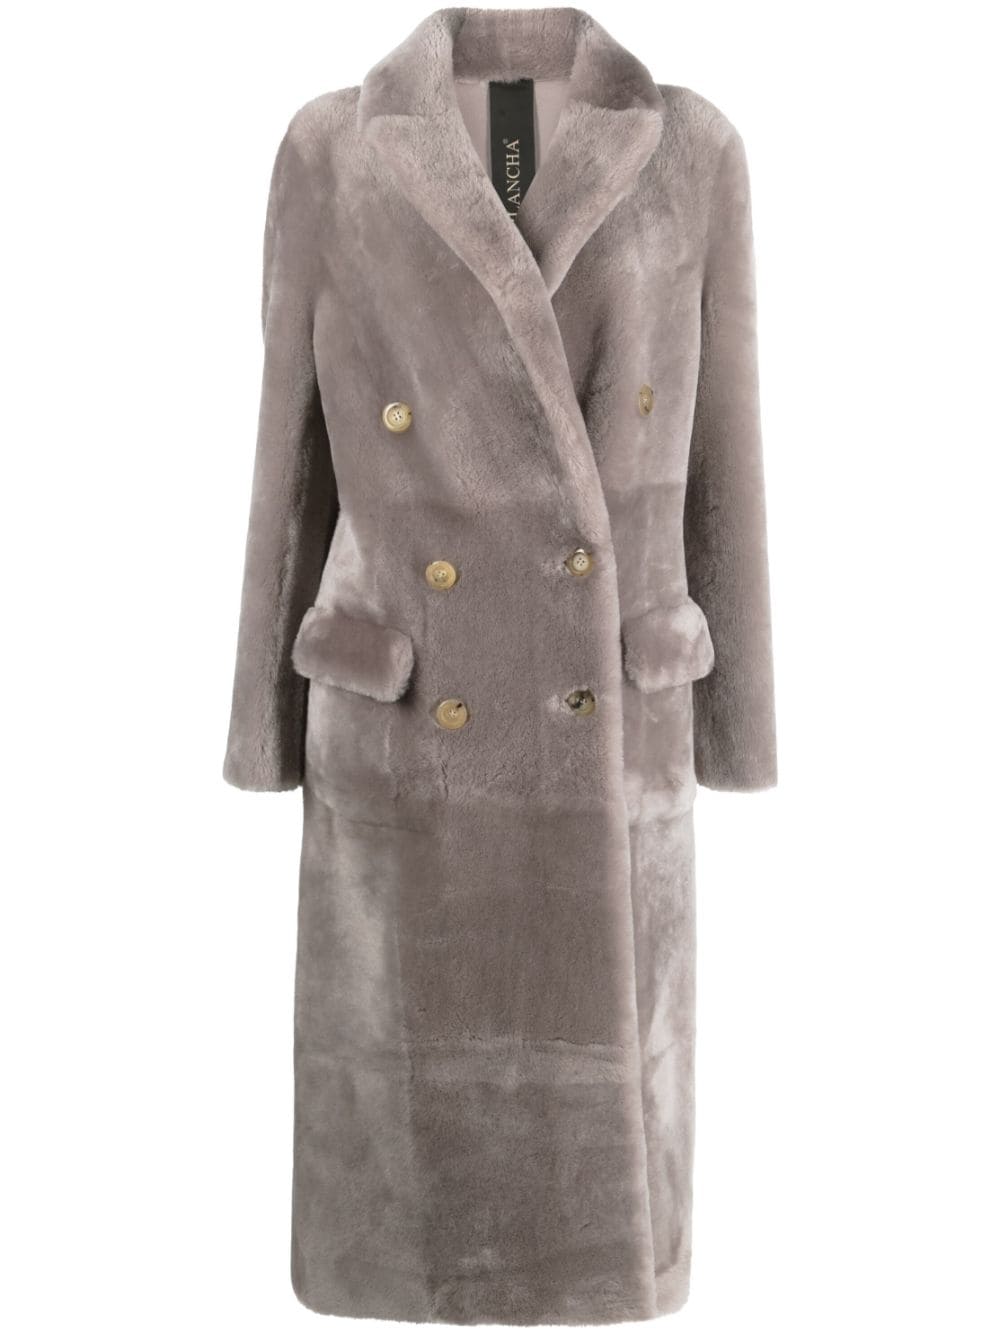 long-sleeve shearling coat